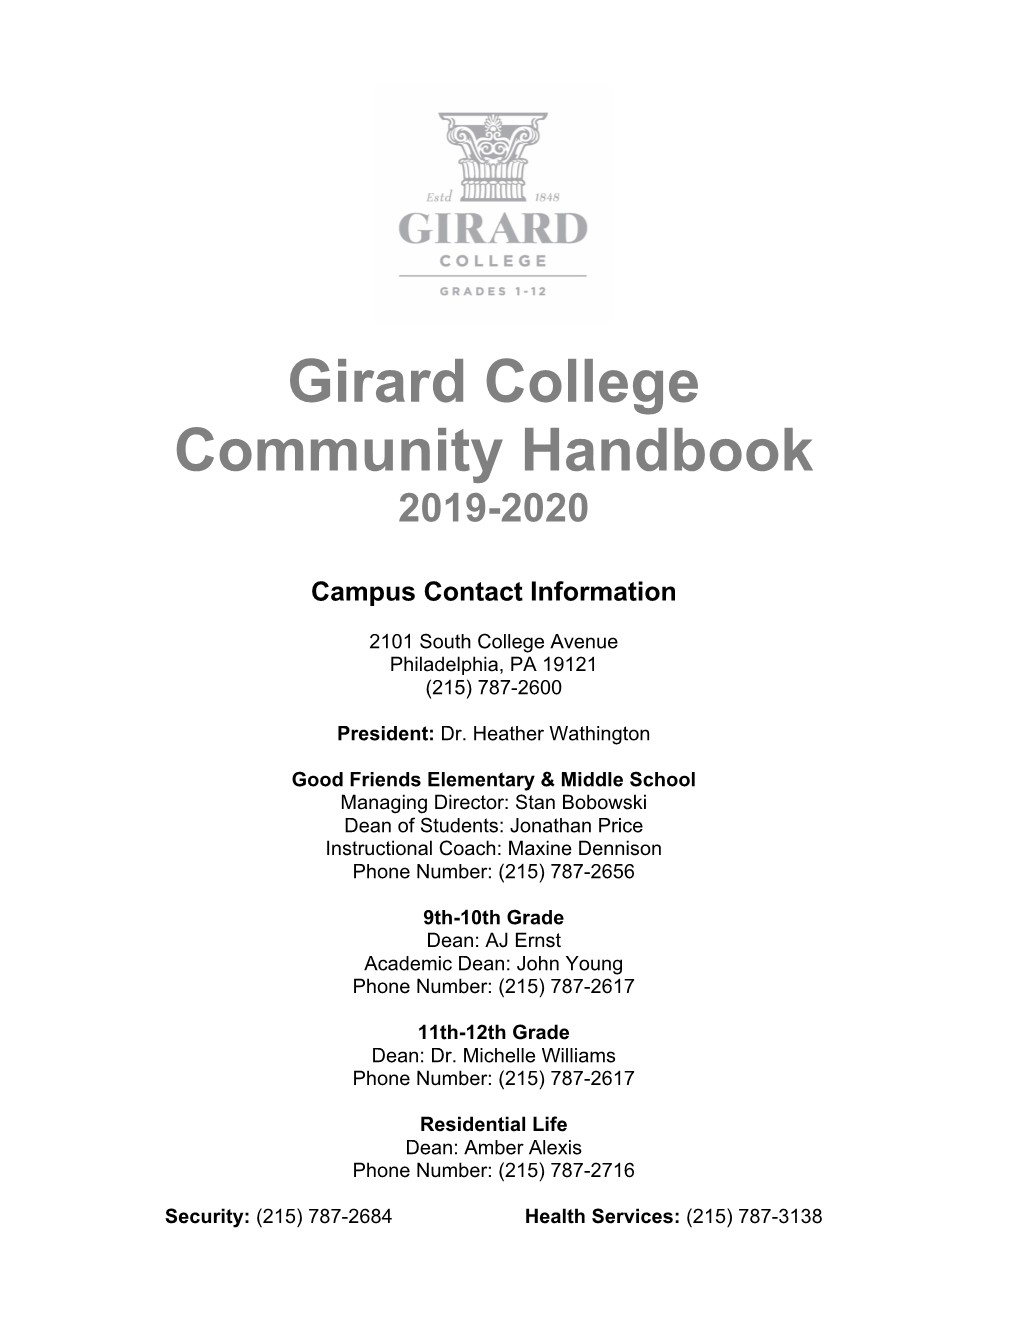 Girard College Community Handbook 2019-2020